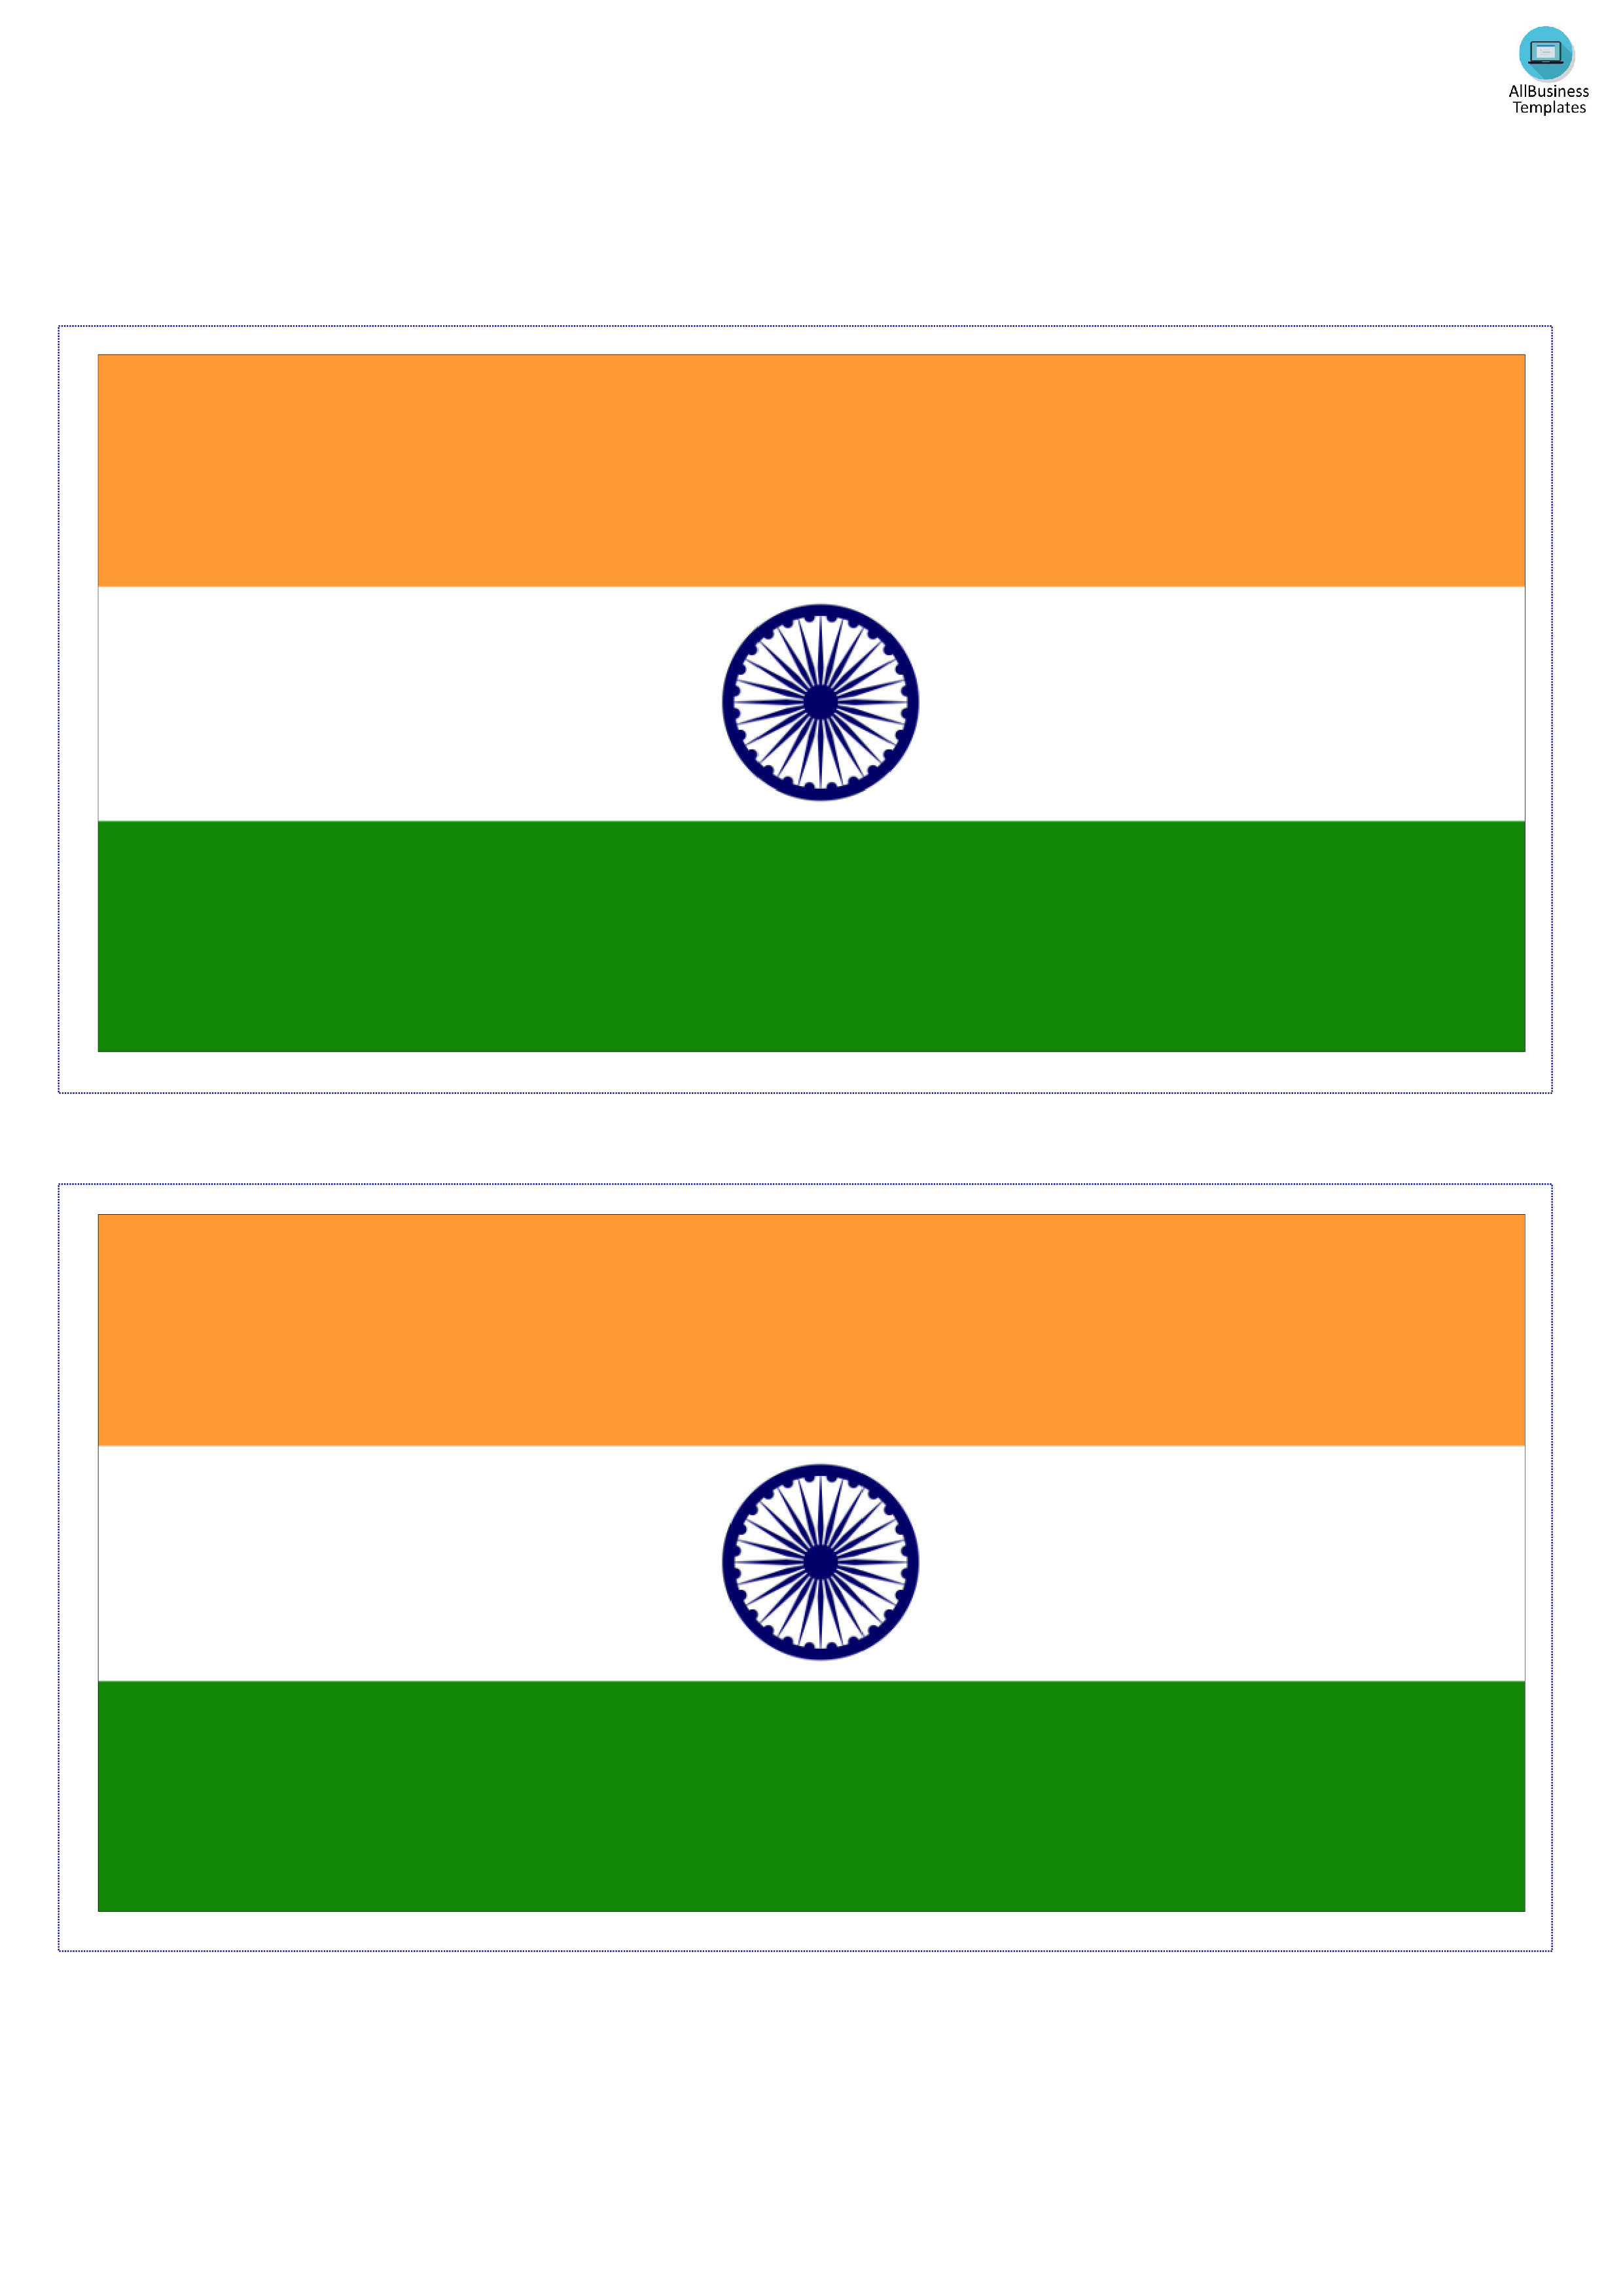 India Flag Templates At Allbusinesstemplates Com